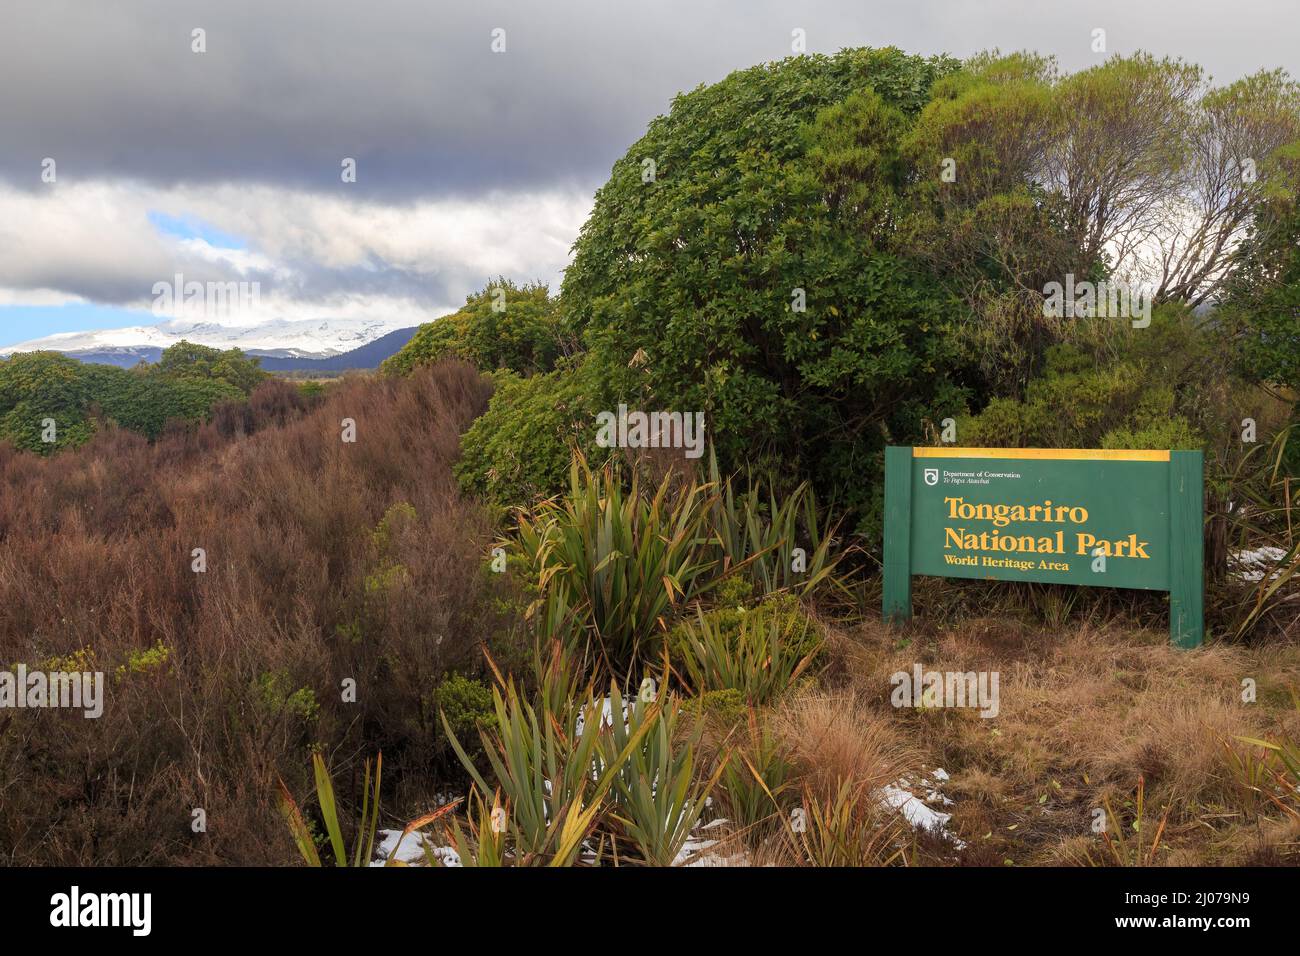 Un panneau du ministère de la conservation sur le bord du parc national de Tongariro, une zone du patrimoine mondial dans le centre de l'île du Nord de la Nouvelle-Zélande Banque D'Images